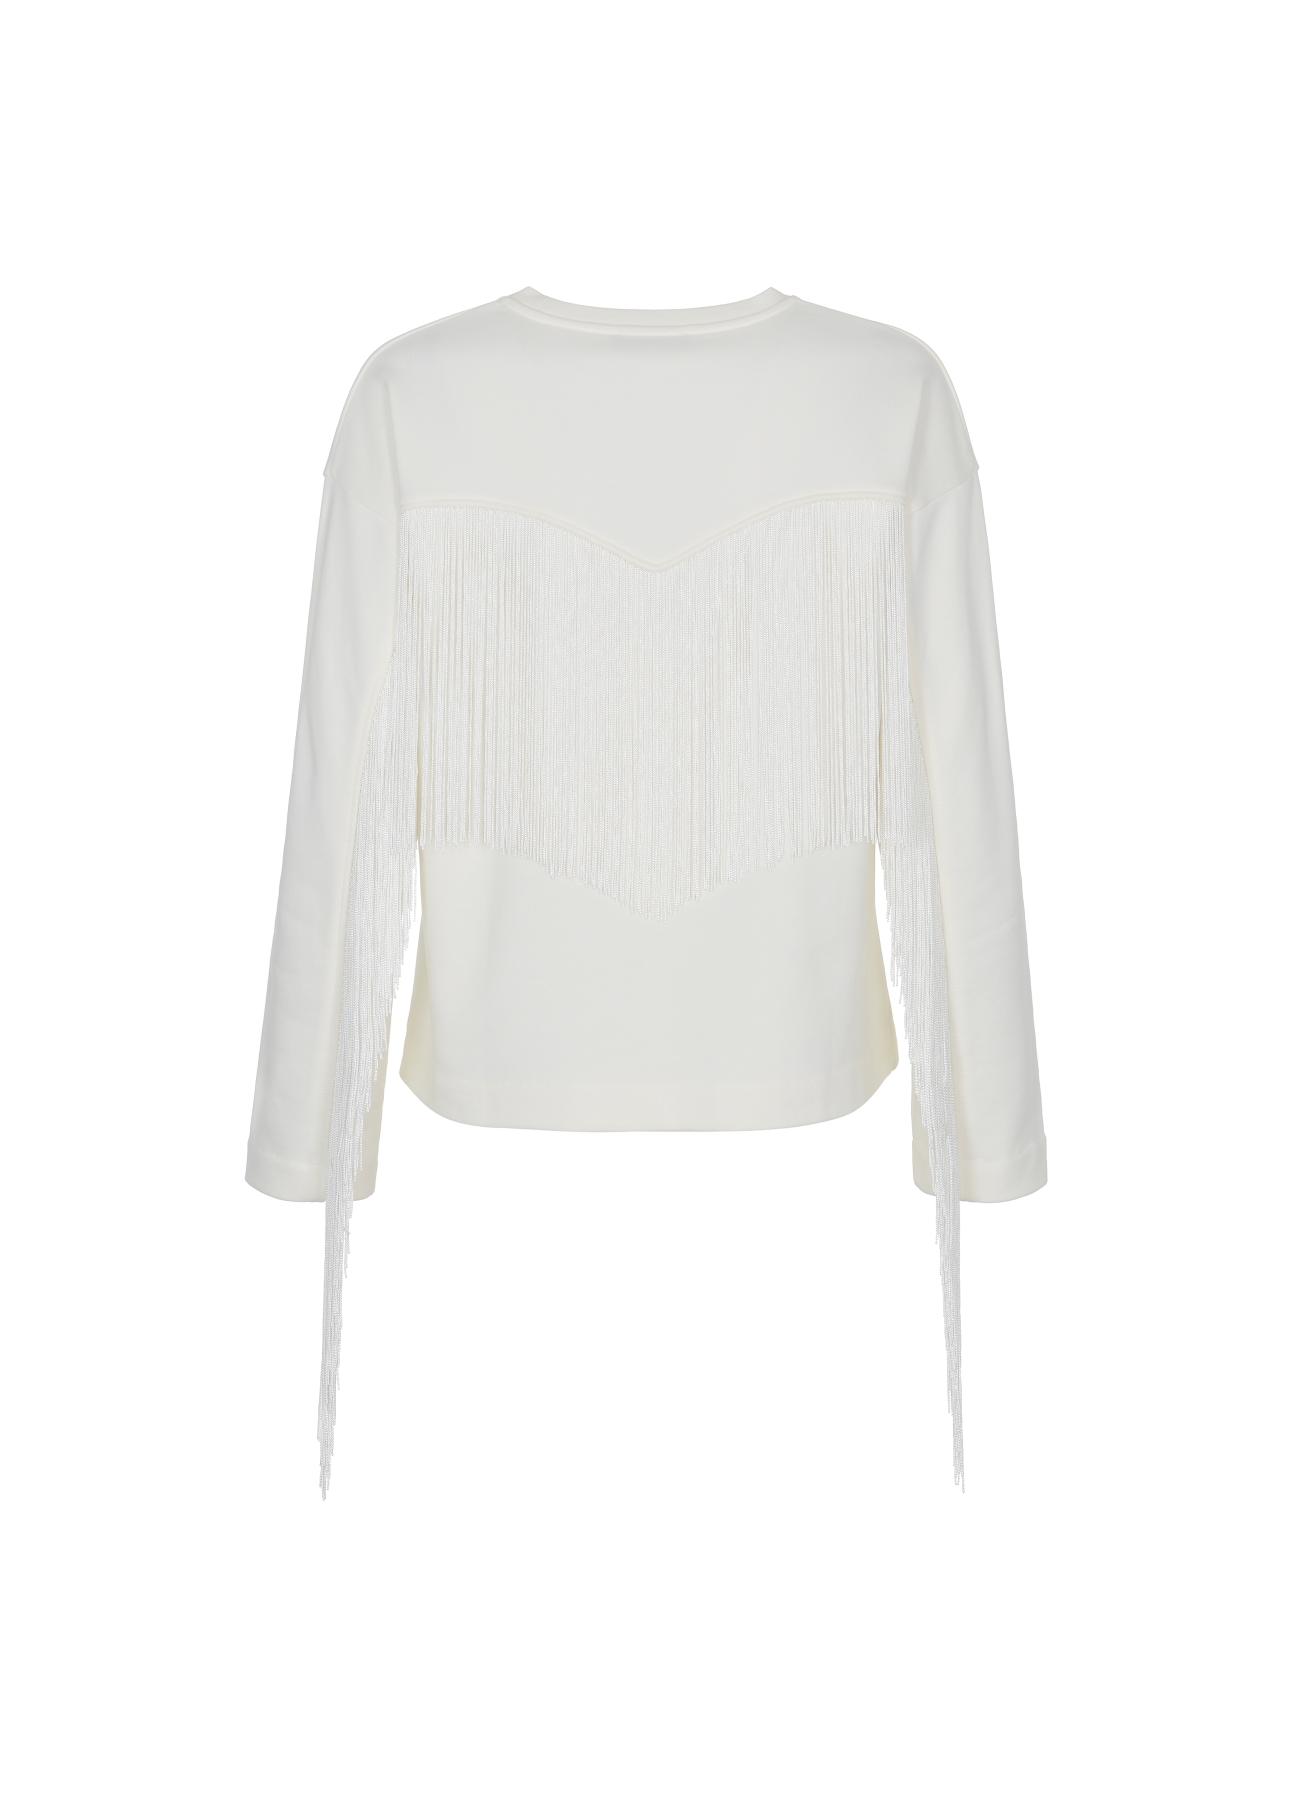 Biała bluza damska z frędzlami BLZDT-0072-12(W22)-04